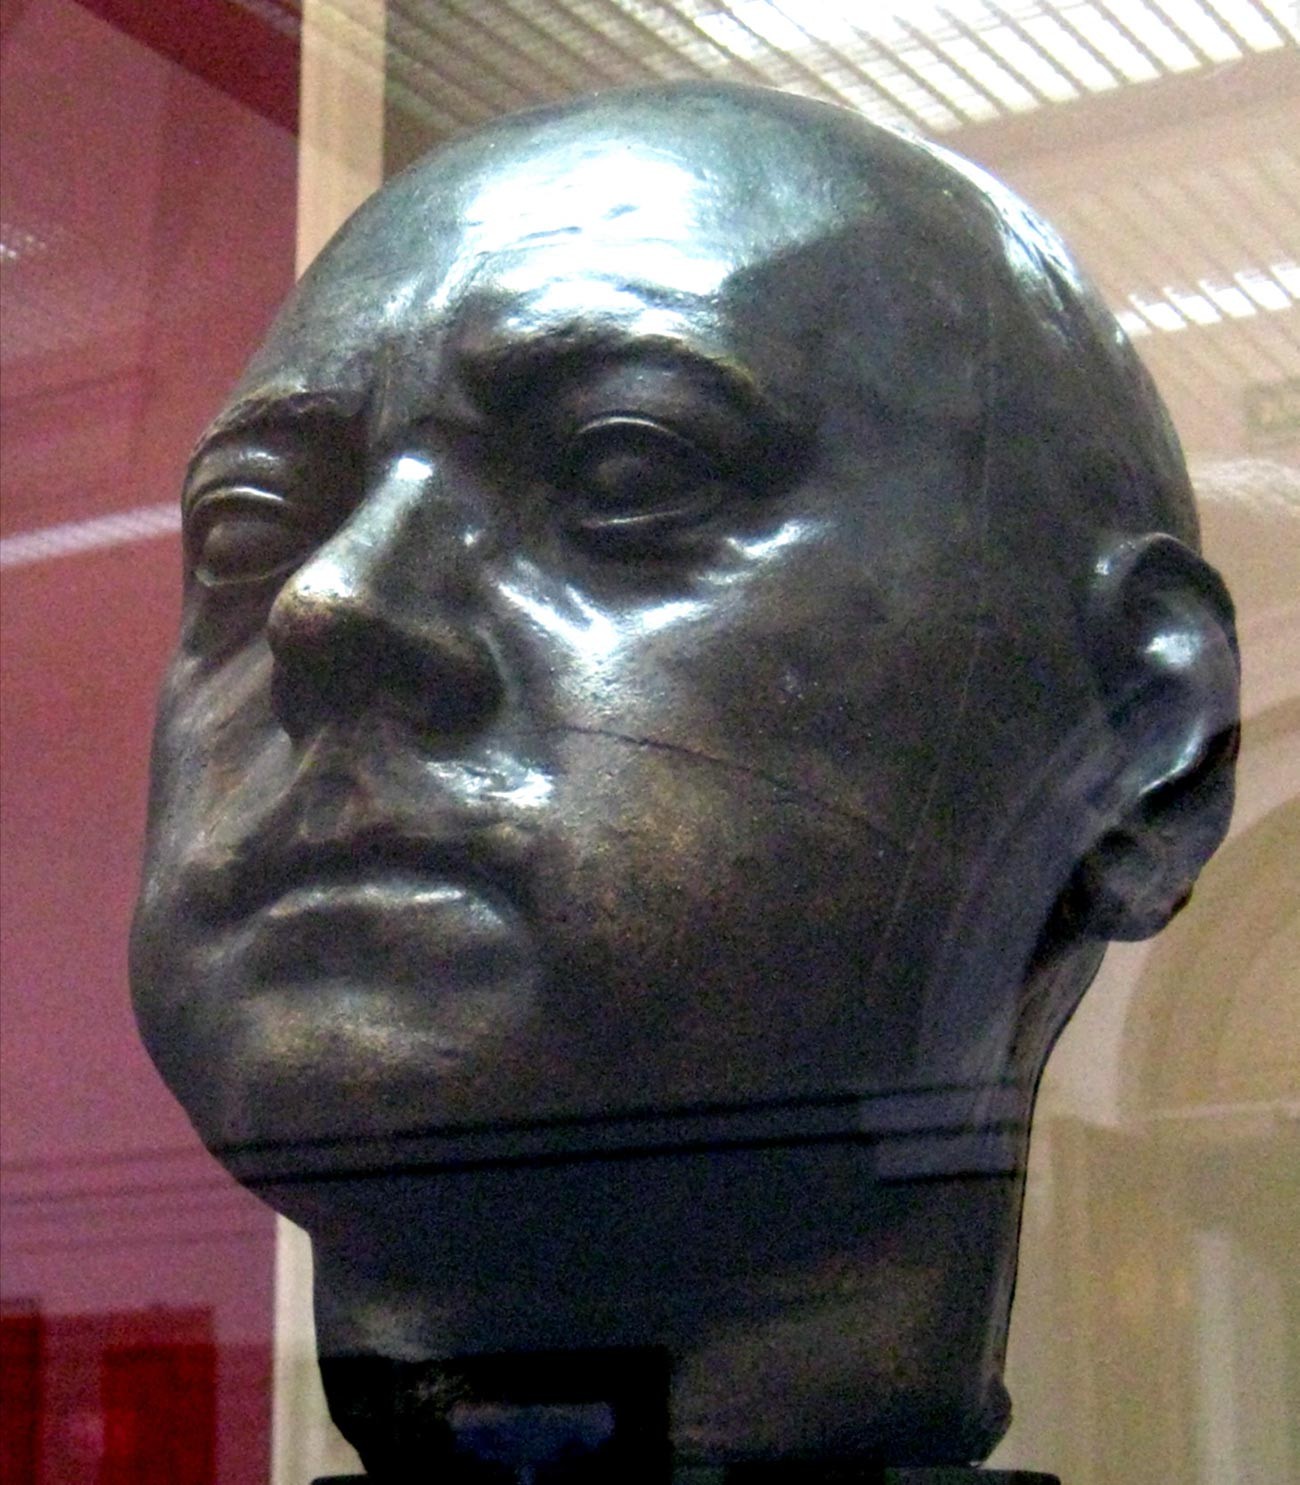 La testa scolpita di Pietro il Grande realizzata a partire dalla sua maschera mortuaria è probabilmente l’unica immagine affidabile dell’Imperatore